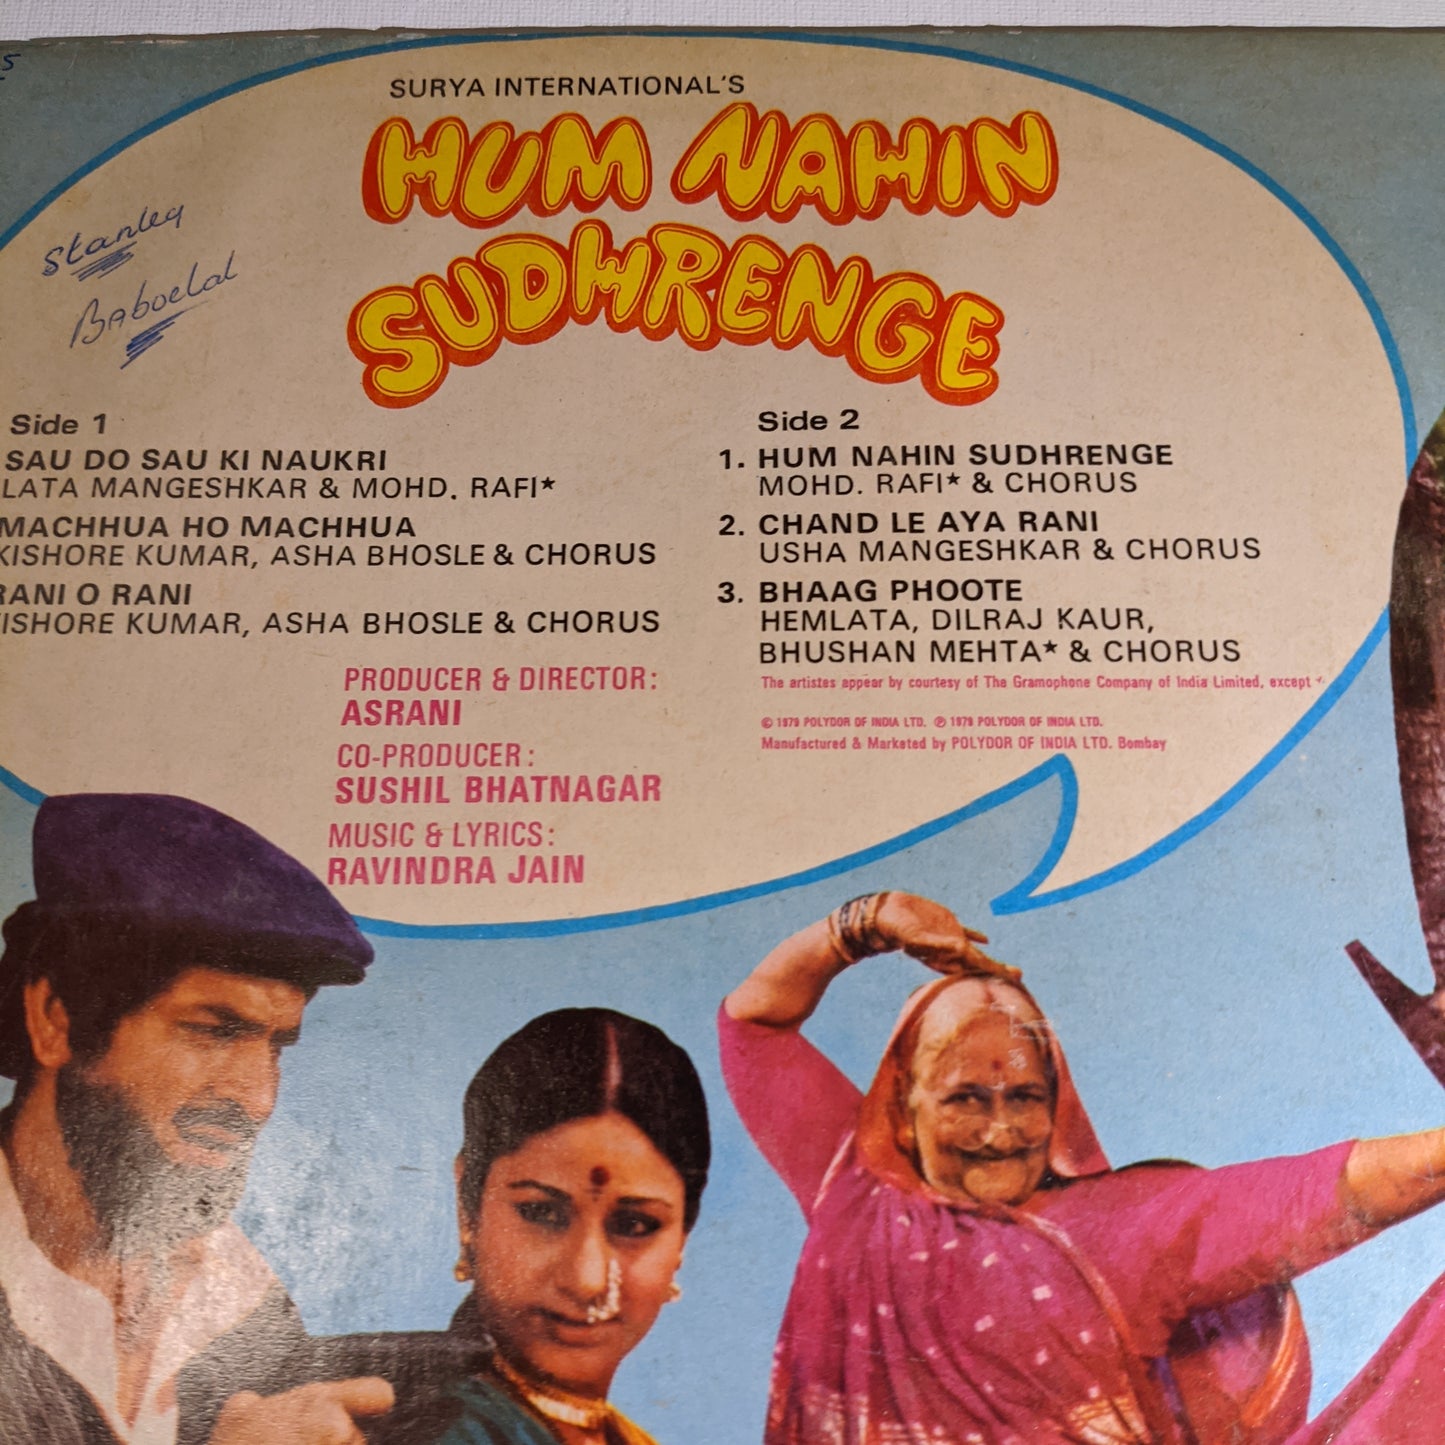 Hum Nahi sudhrenge - Ravindra Jain classic Gatefold in Near Mint